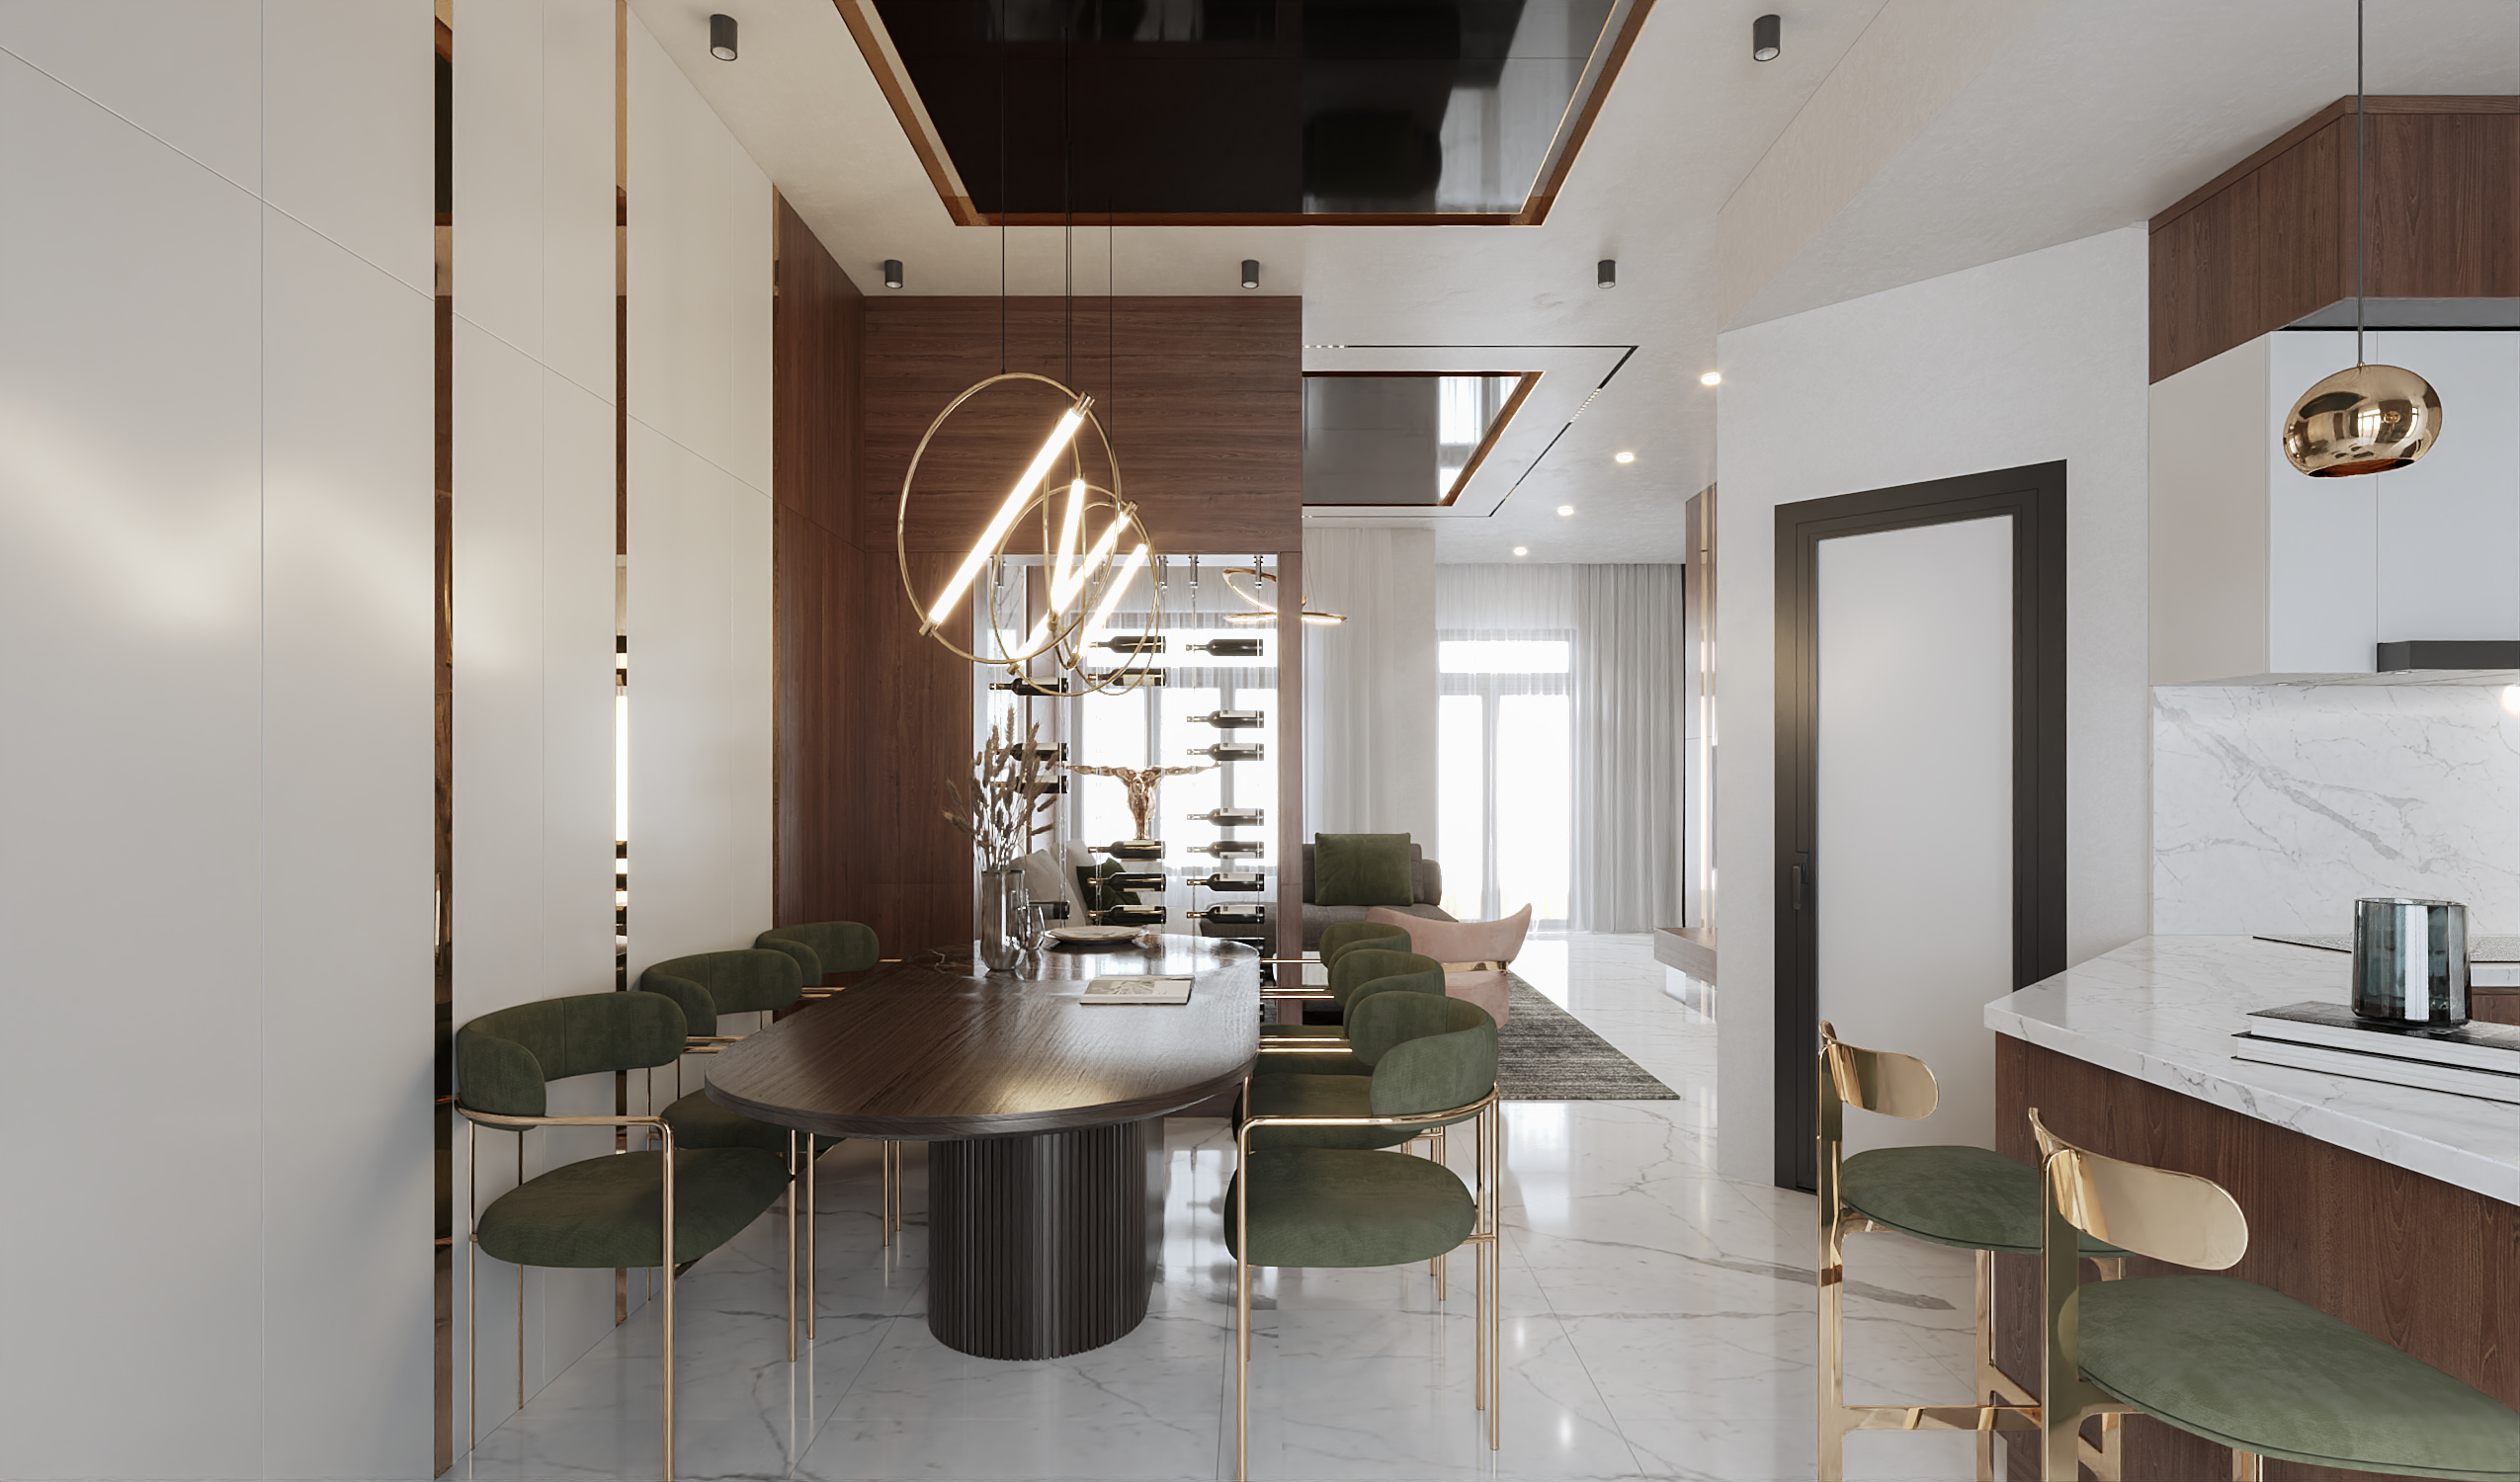 Thiết kế nội thất Biệt Thự tại Hồ Chí Minh DỰ ÁN BIỆT THỰ LAVILA 1622208263 7